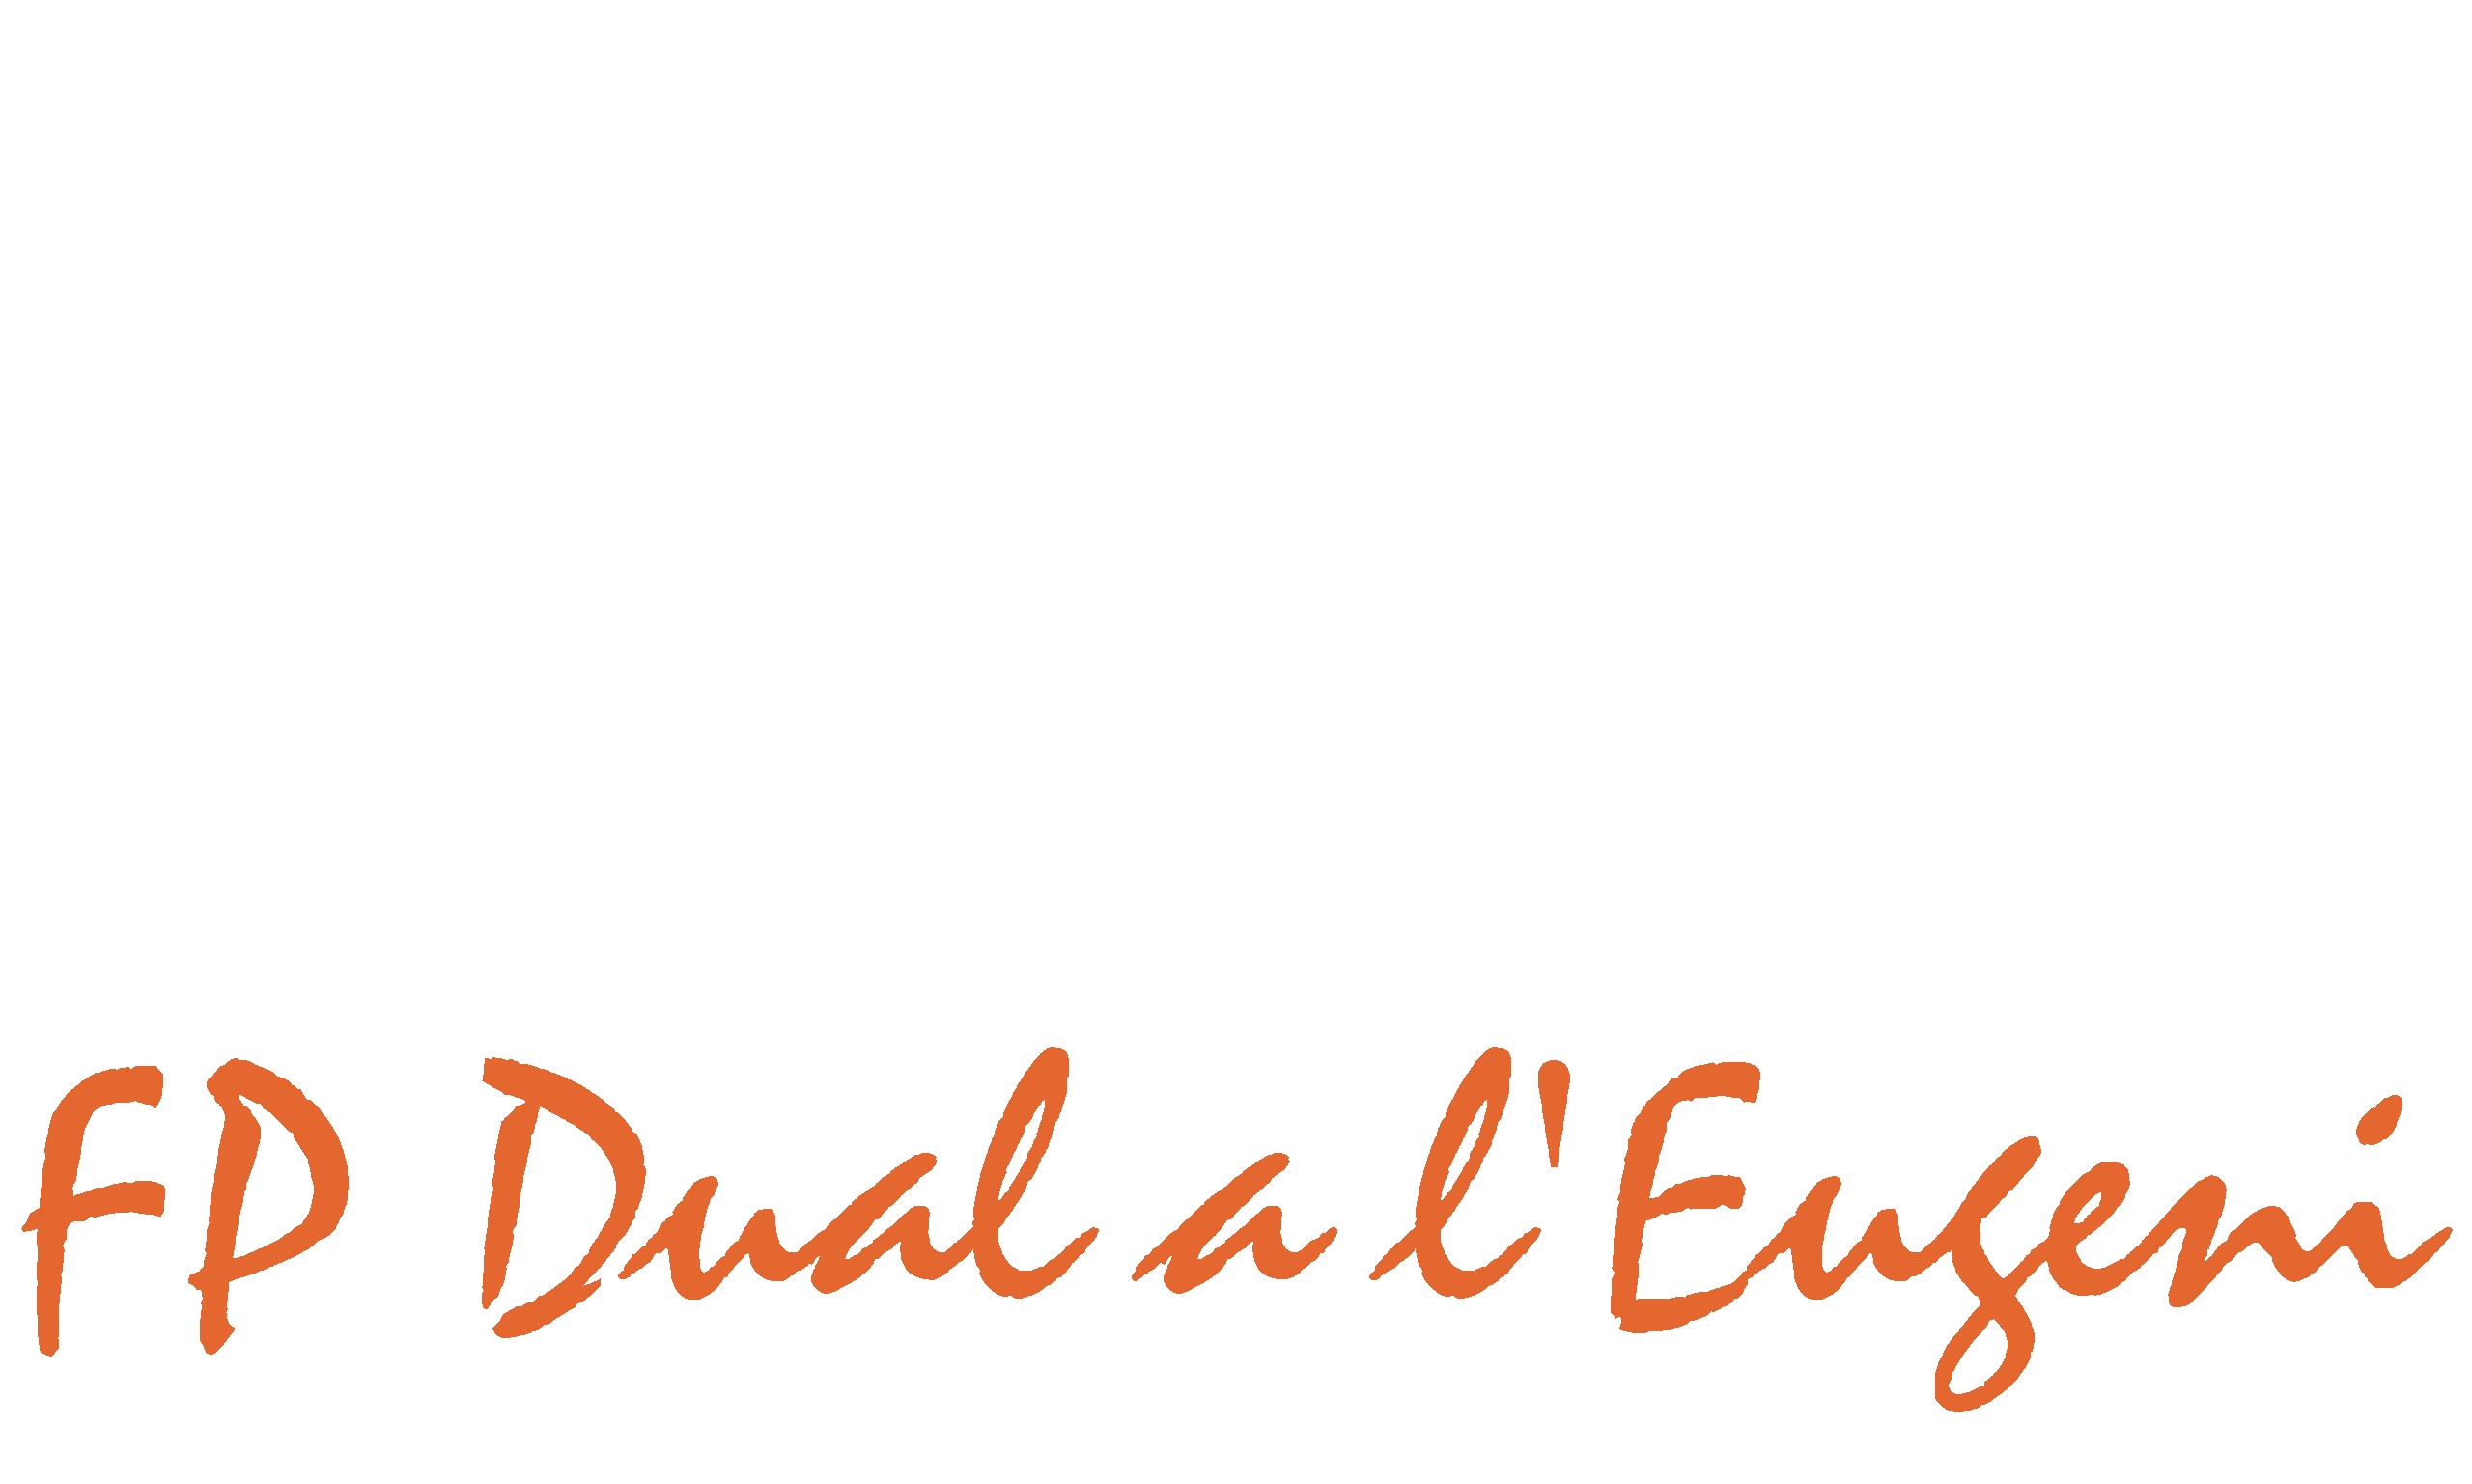 Formació Professional Dual a l'IES Eugeni d'Ors